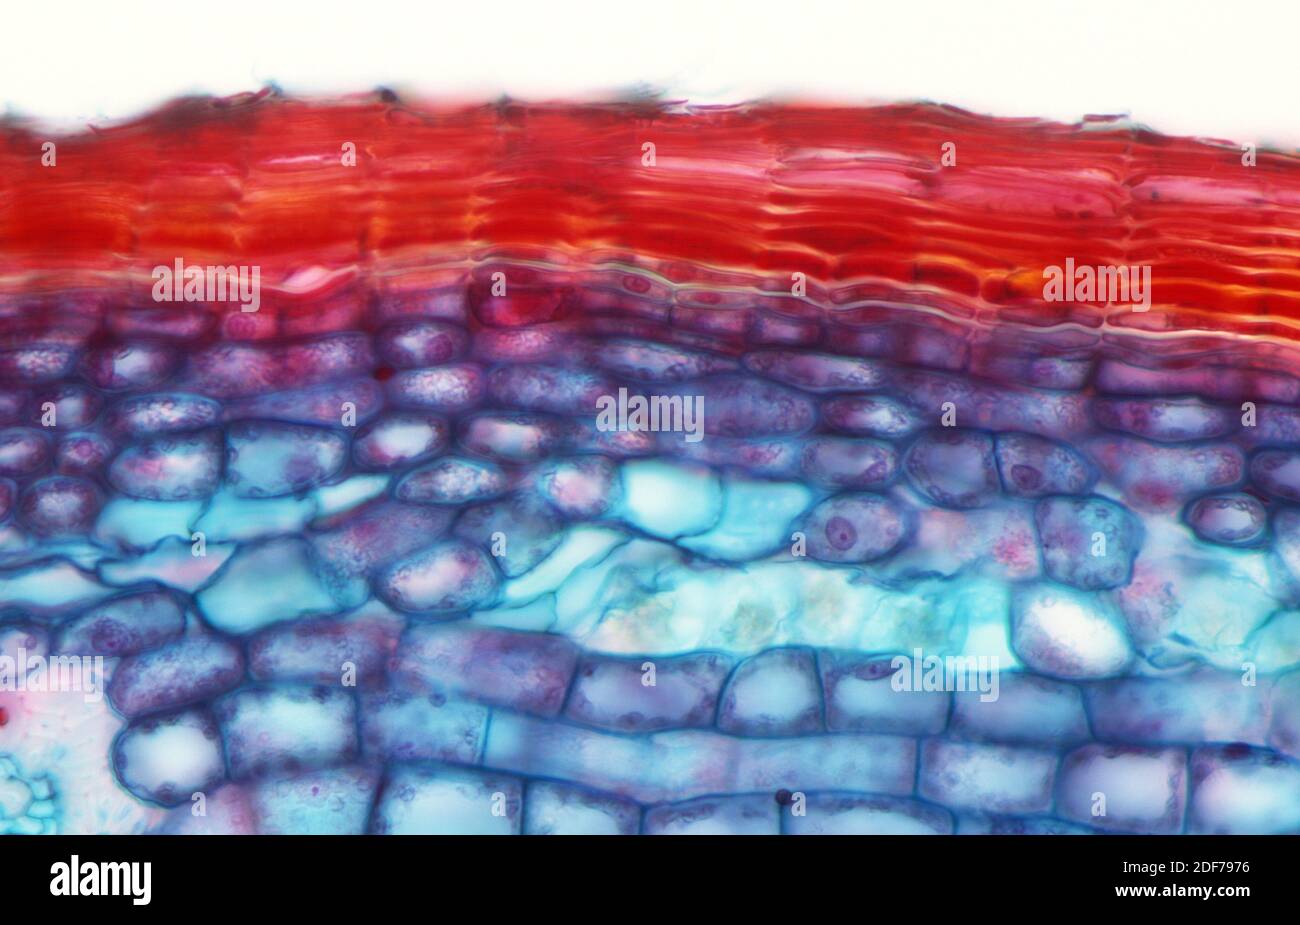 Il canbium di sughero o fellogen è il tessuto meristematico responsabile della formazione della corteccia nelle piante. Fotomicrografia. Foto Stock